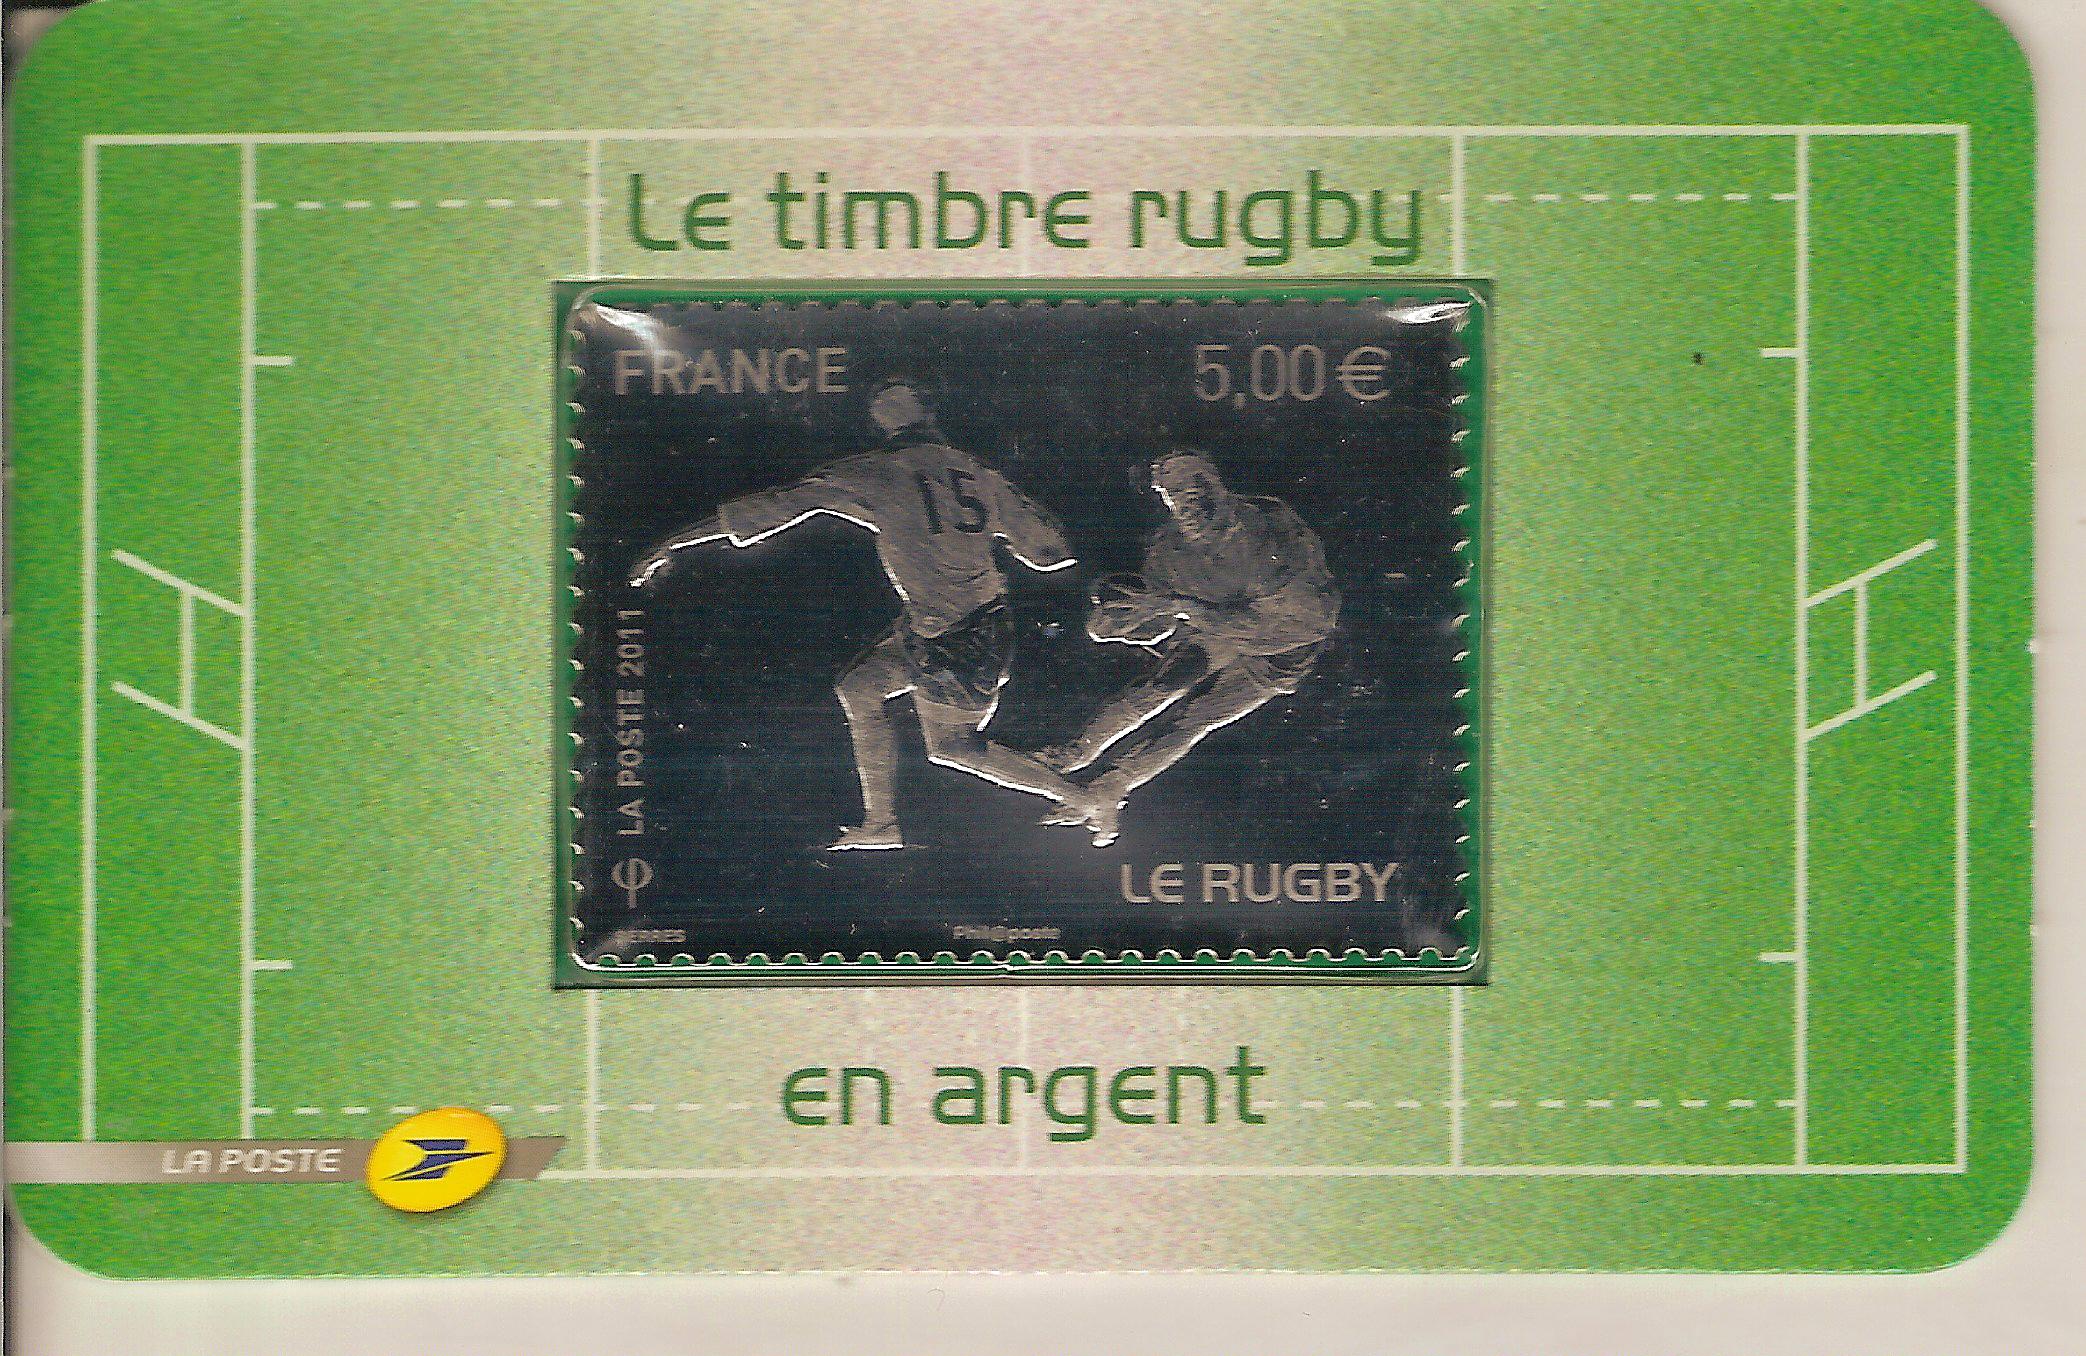 Francia rugby arg.